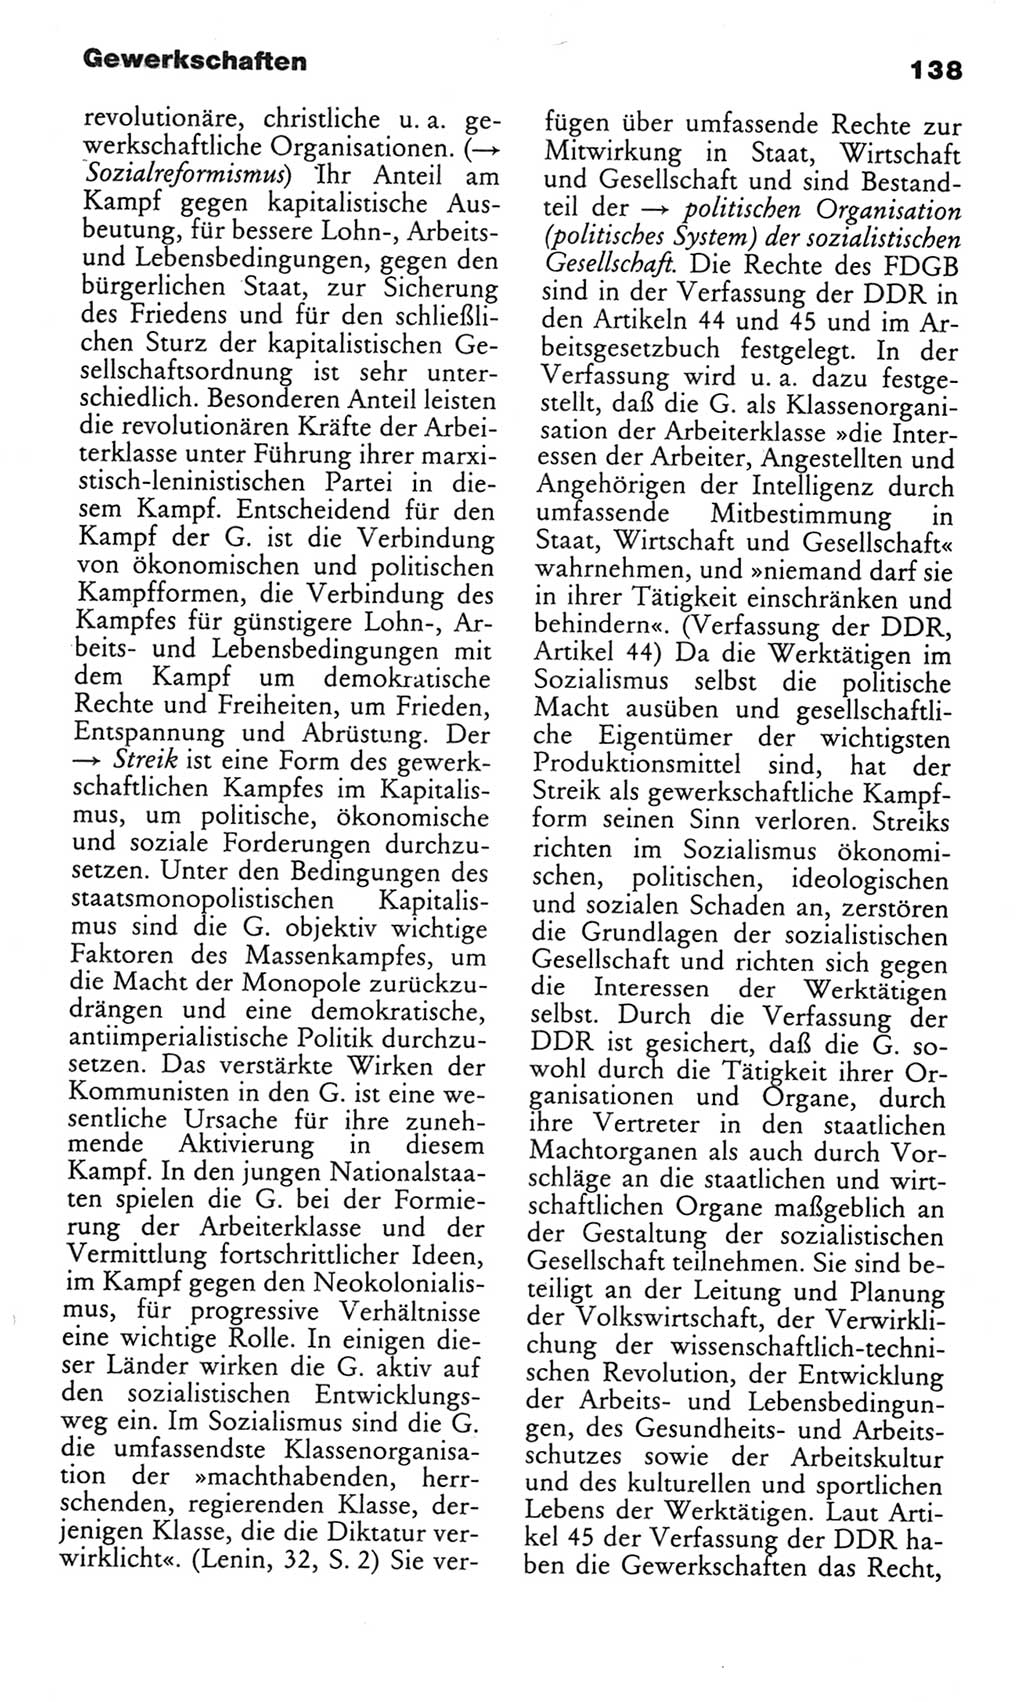 Wörterbuch des wissenschaftlichen Kommunismus [Deutsche Demokratische Republik (DDR)] 1982, Seite 138 (Wb. wiss. Komm. DDR 1982, S. 138)